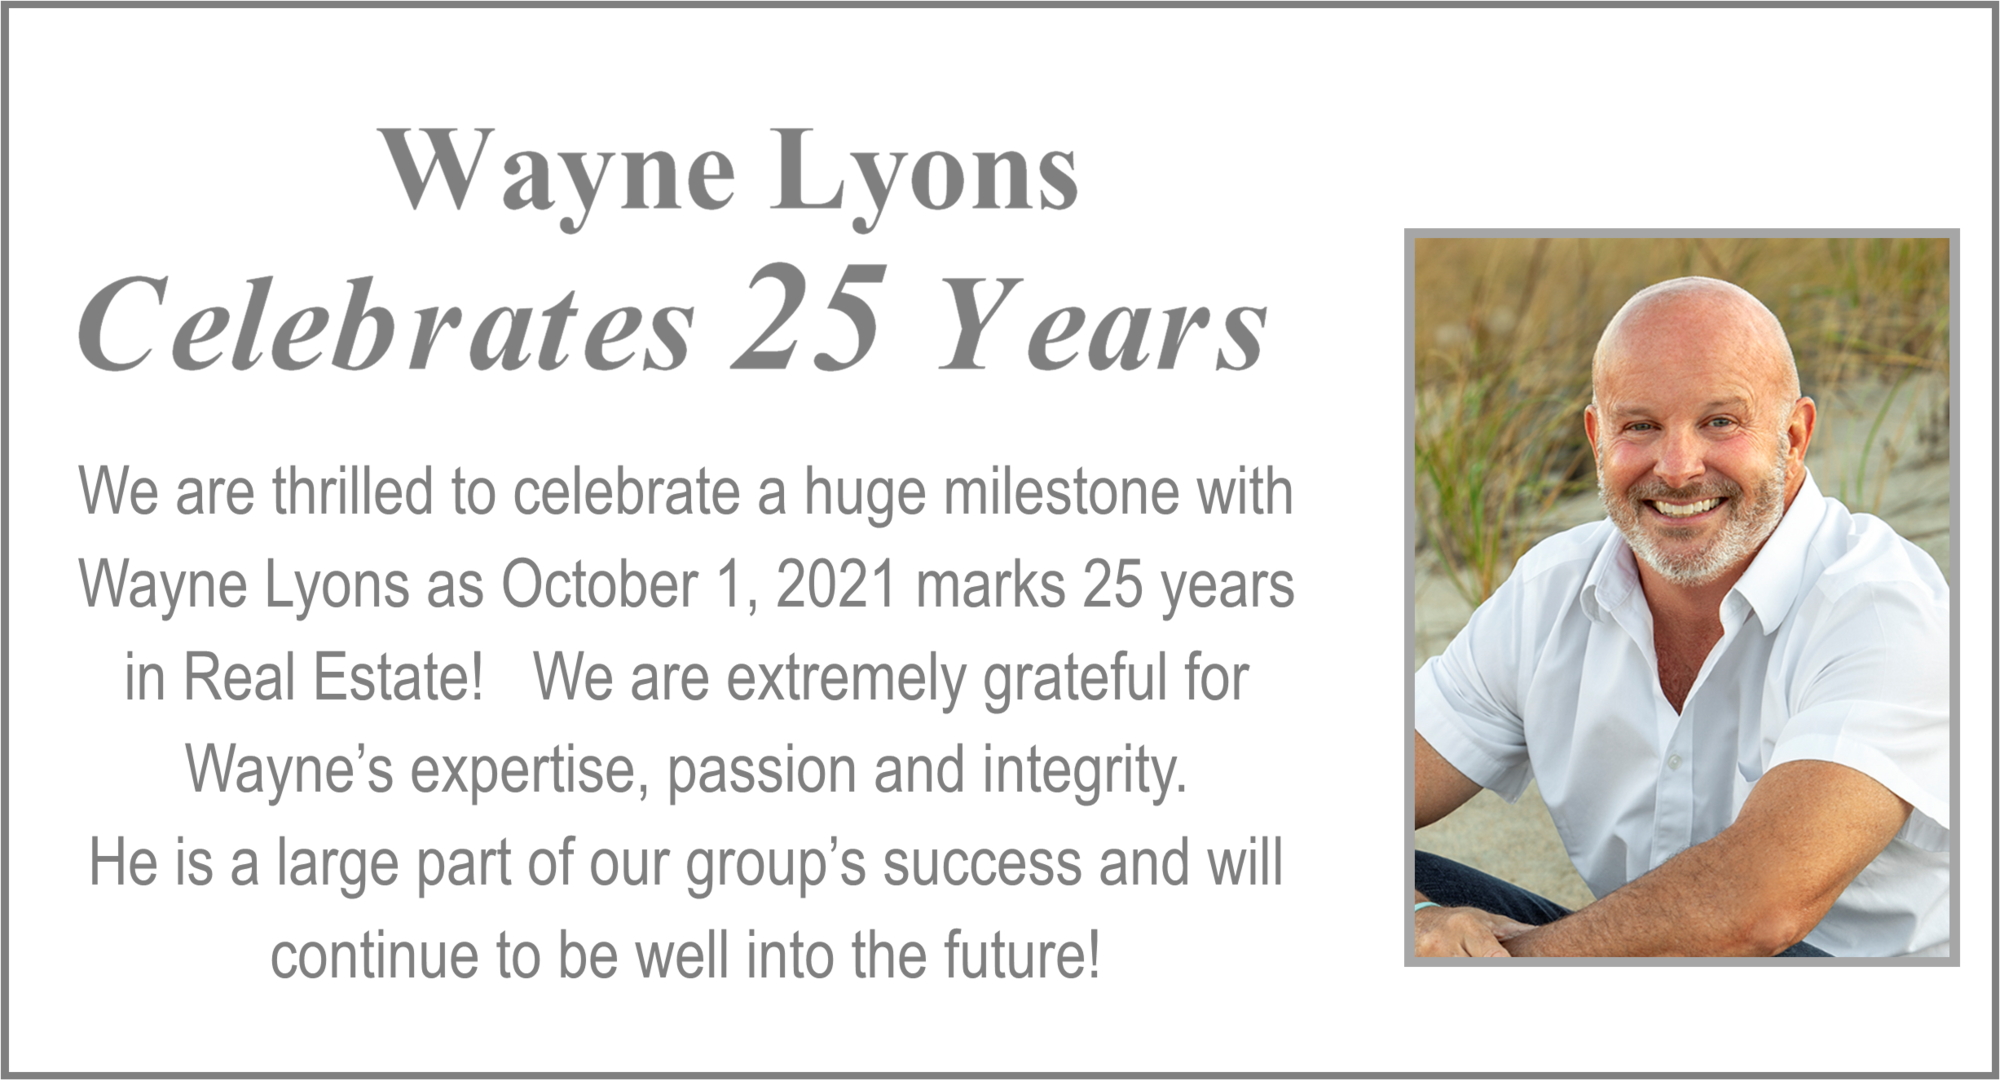 Wayne Lyons Celebrates 25 Years in Real Estate